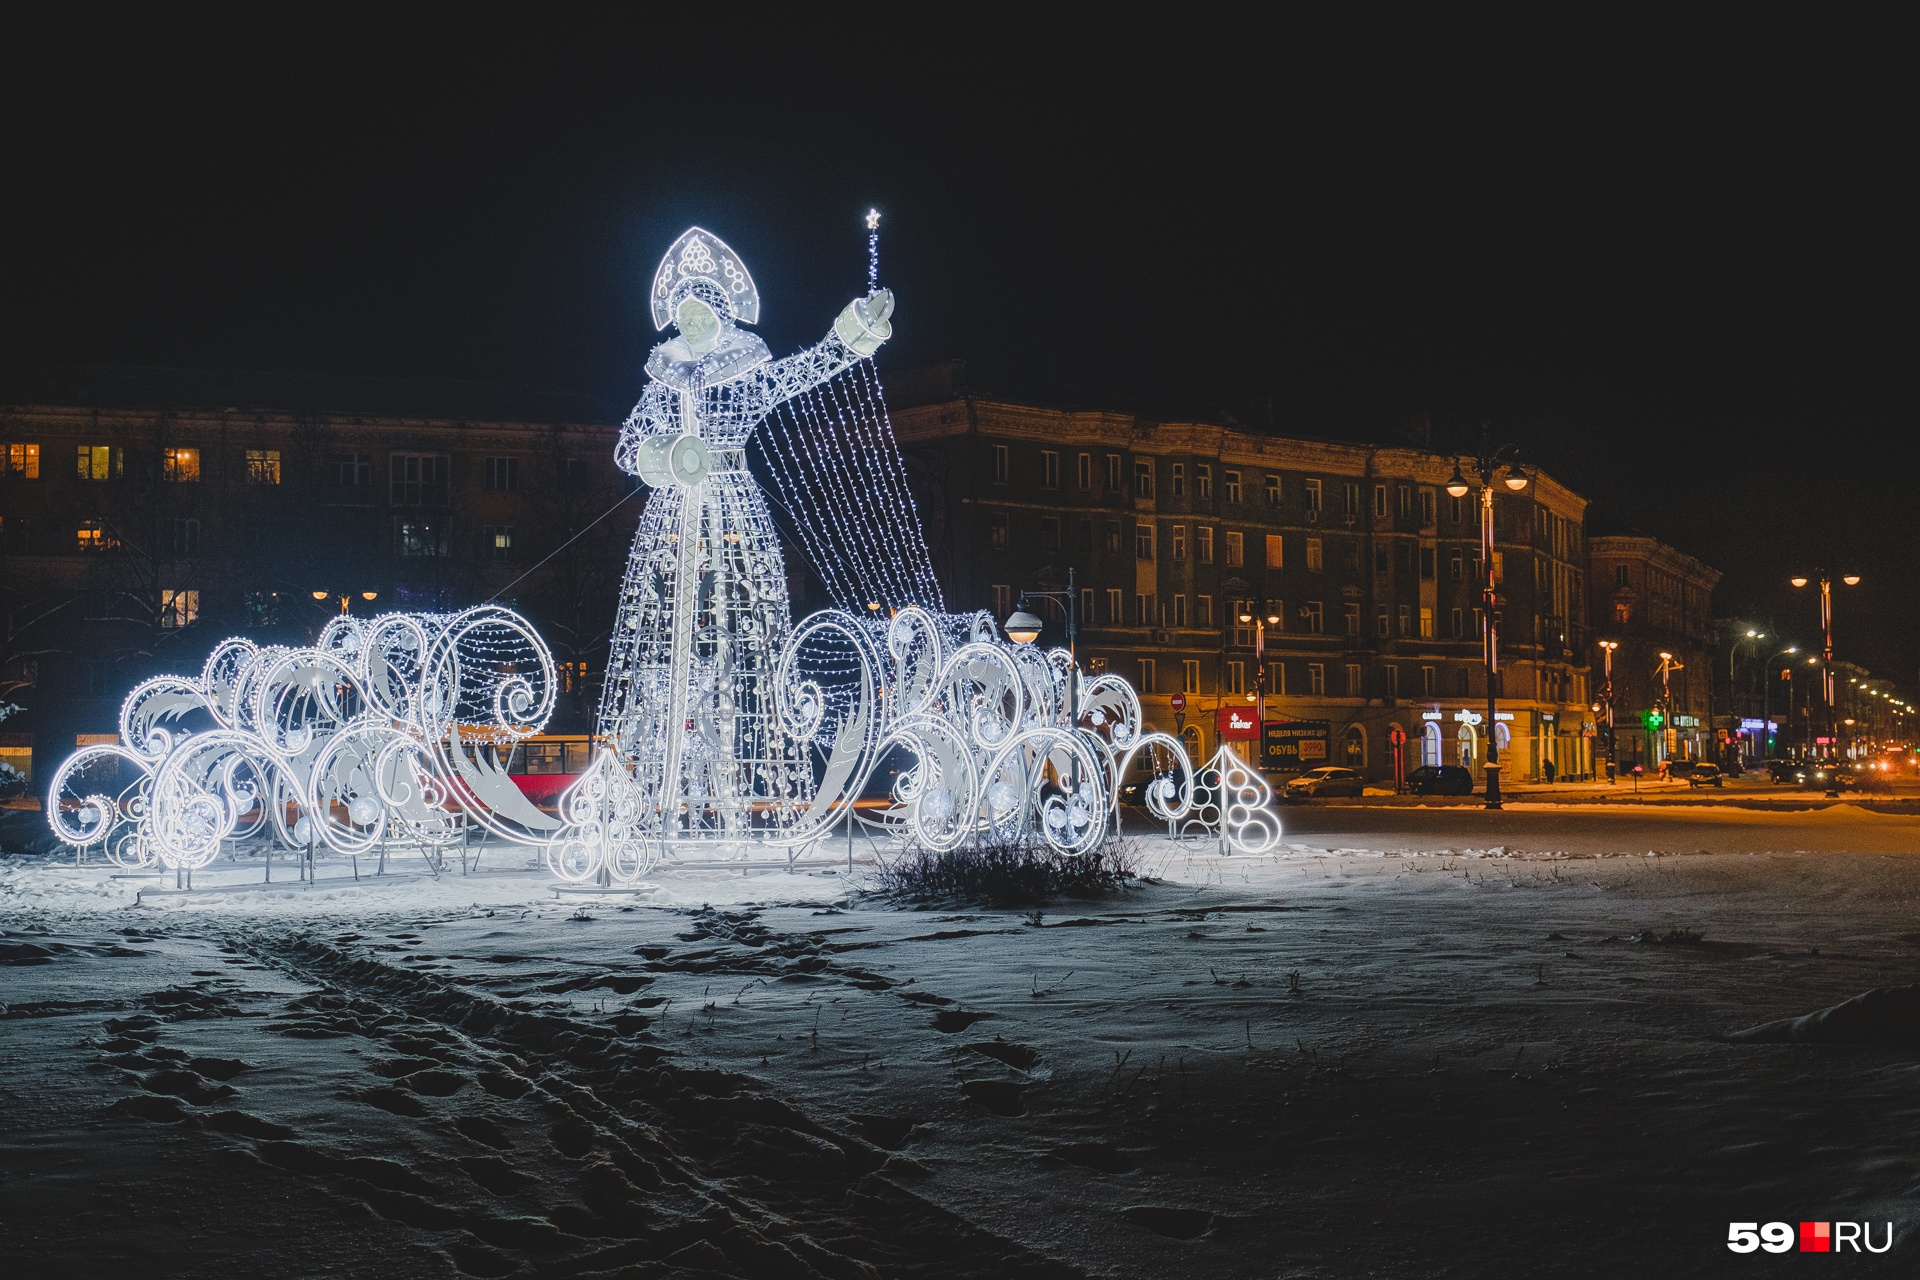 Огромная светящаяся Снегурочка на Комсомольской площади (кажется, она немного похожа на статую Свободы)